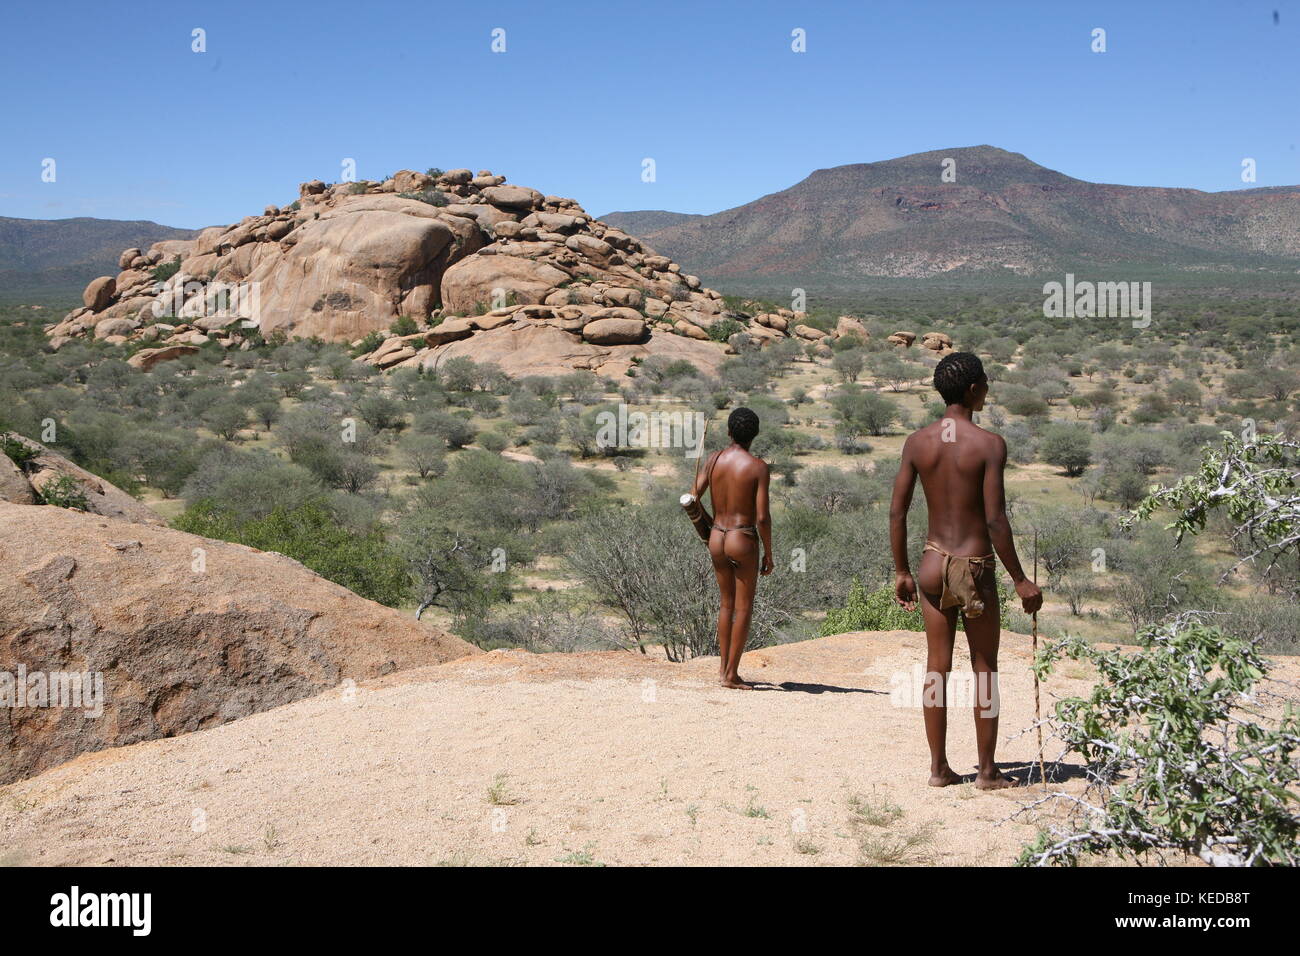 San Buschmänner persone in Namibia - Volksstamm - cercando di cacciare Foto Stock